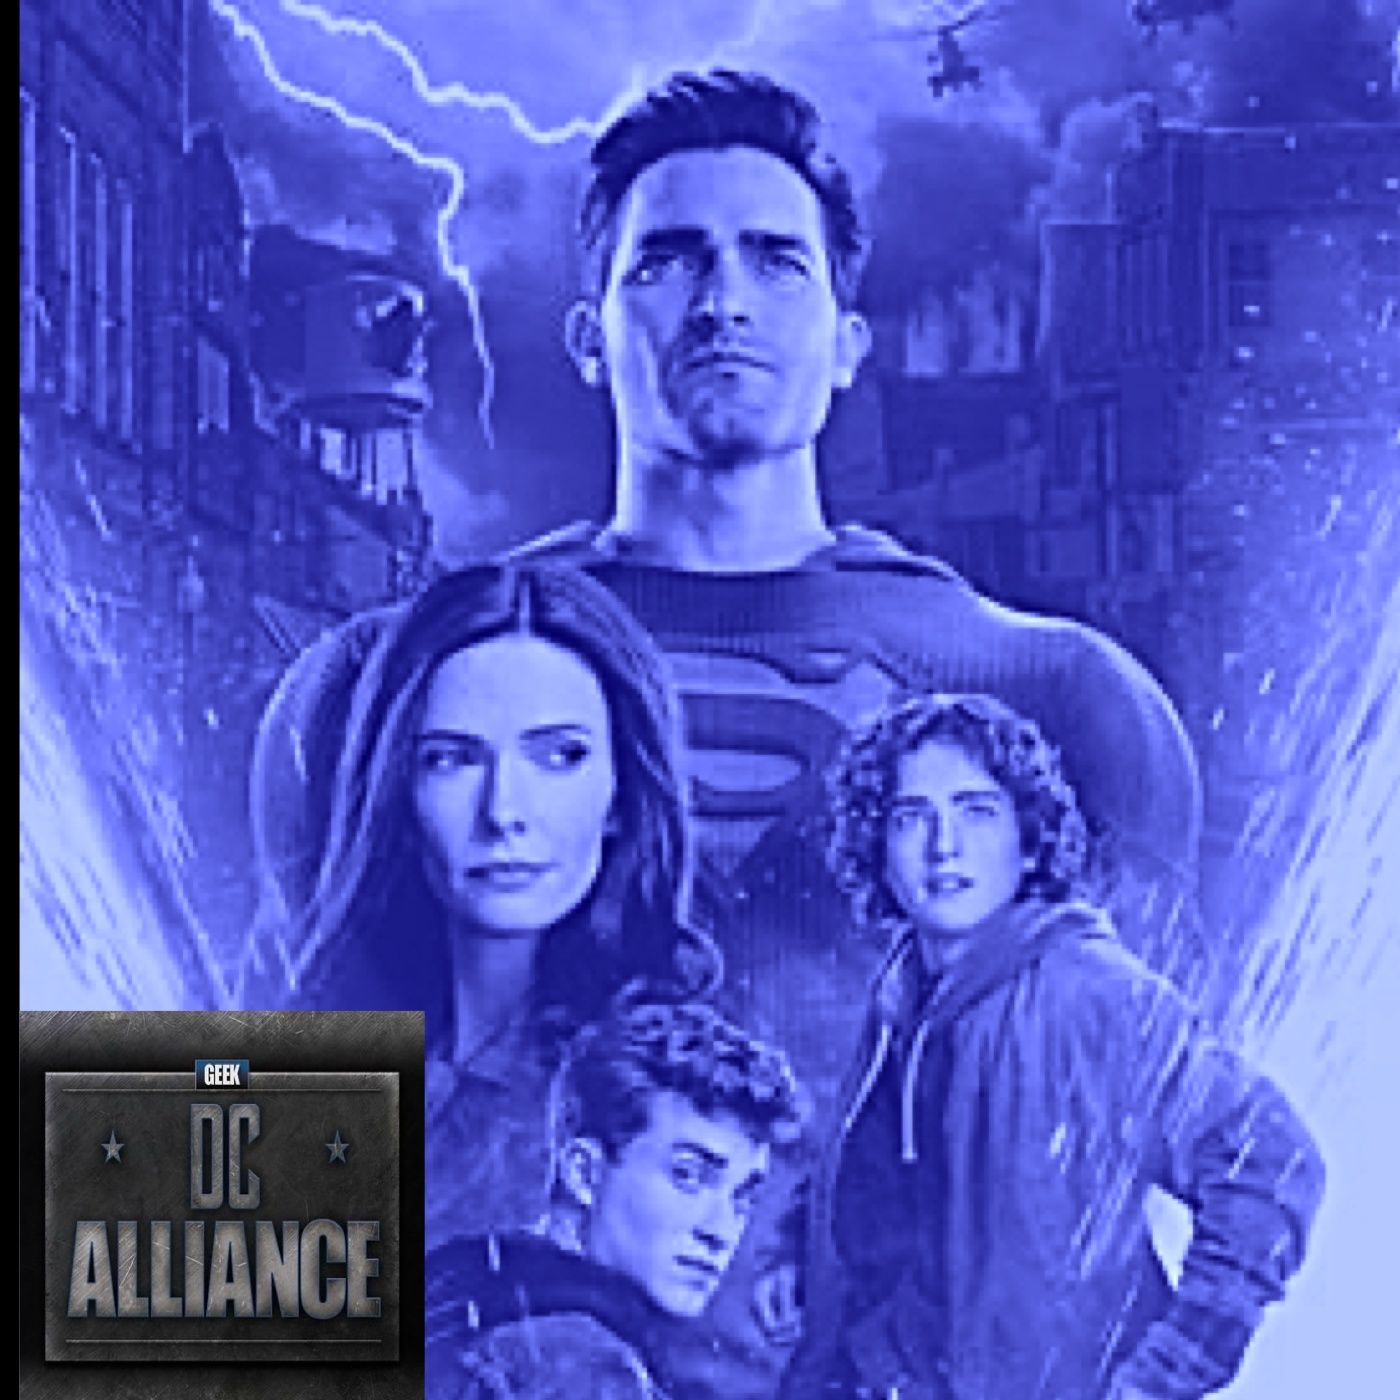 Superman & Lois 2x08 Review: DC Alliance Ch. 103